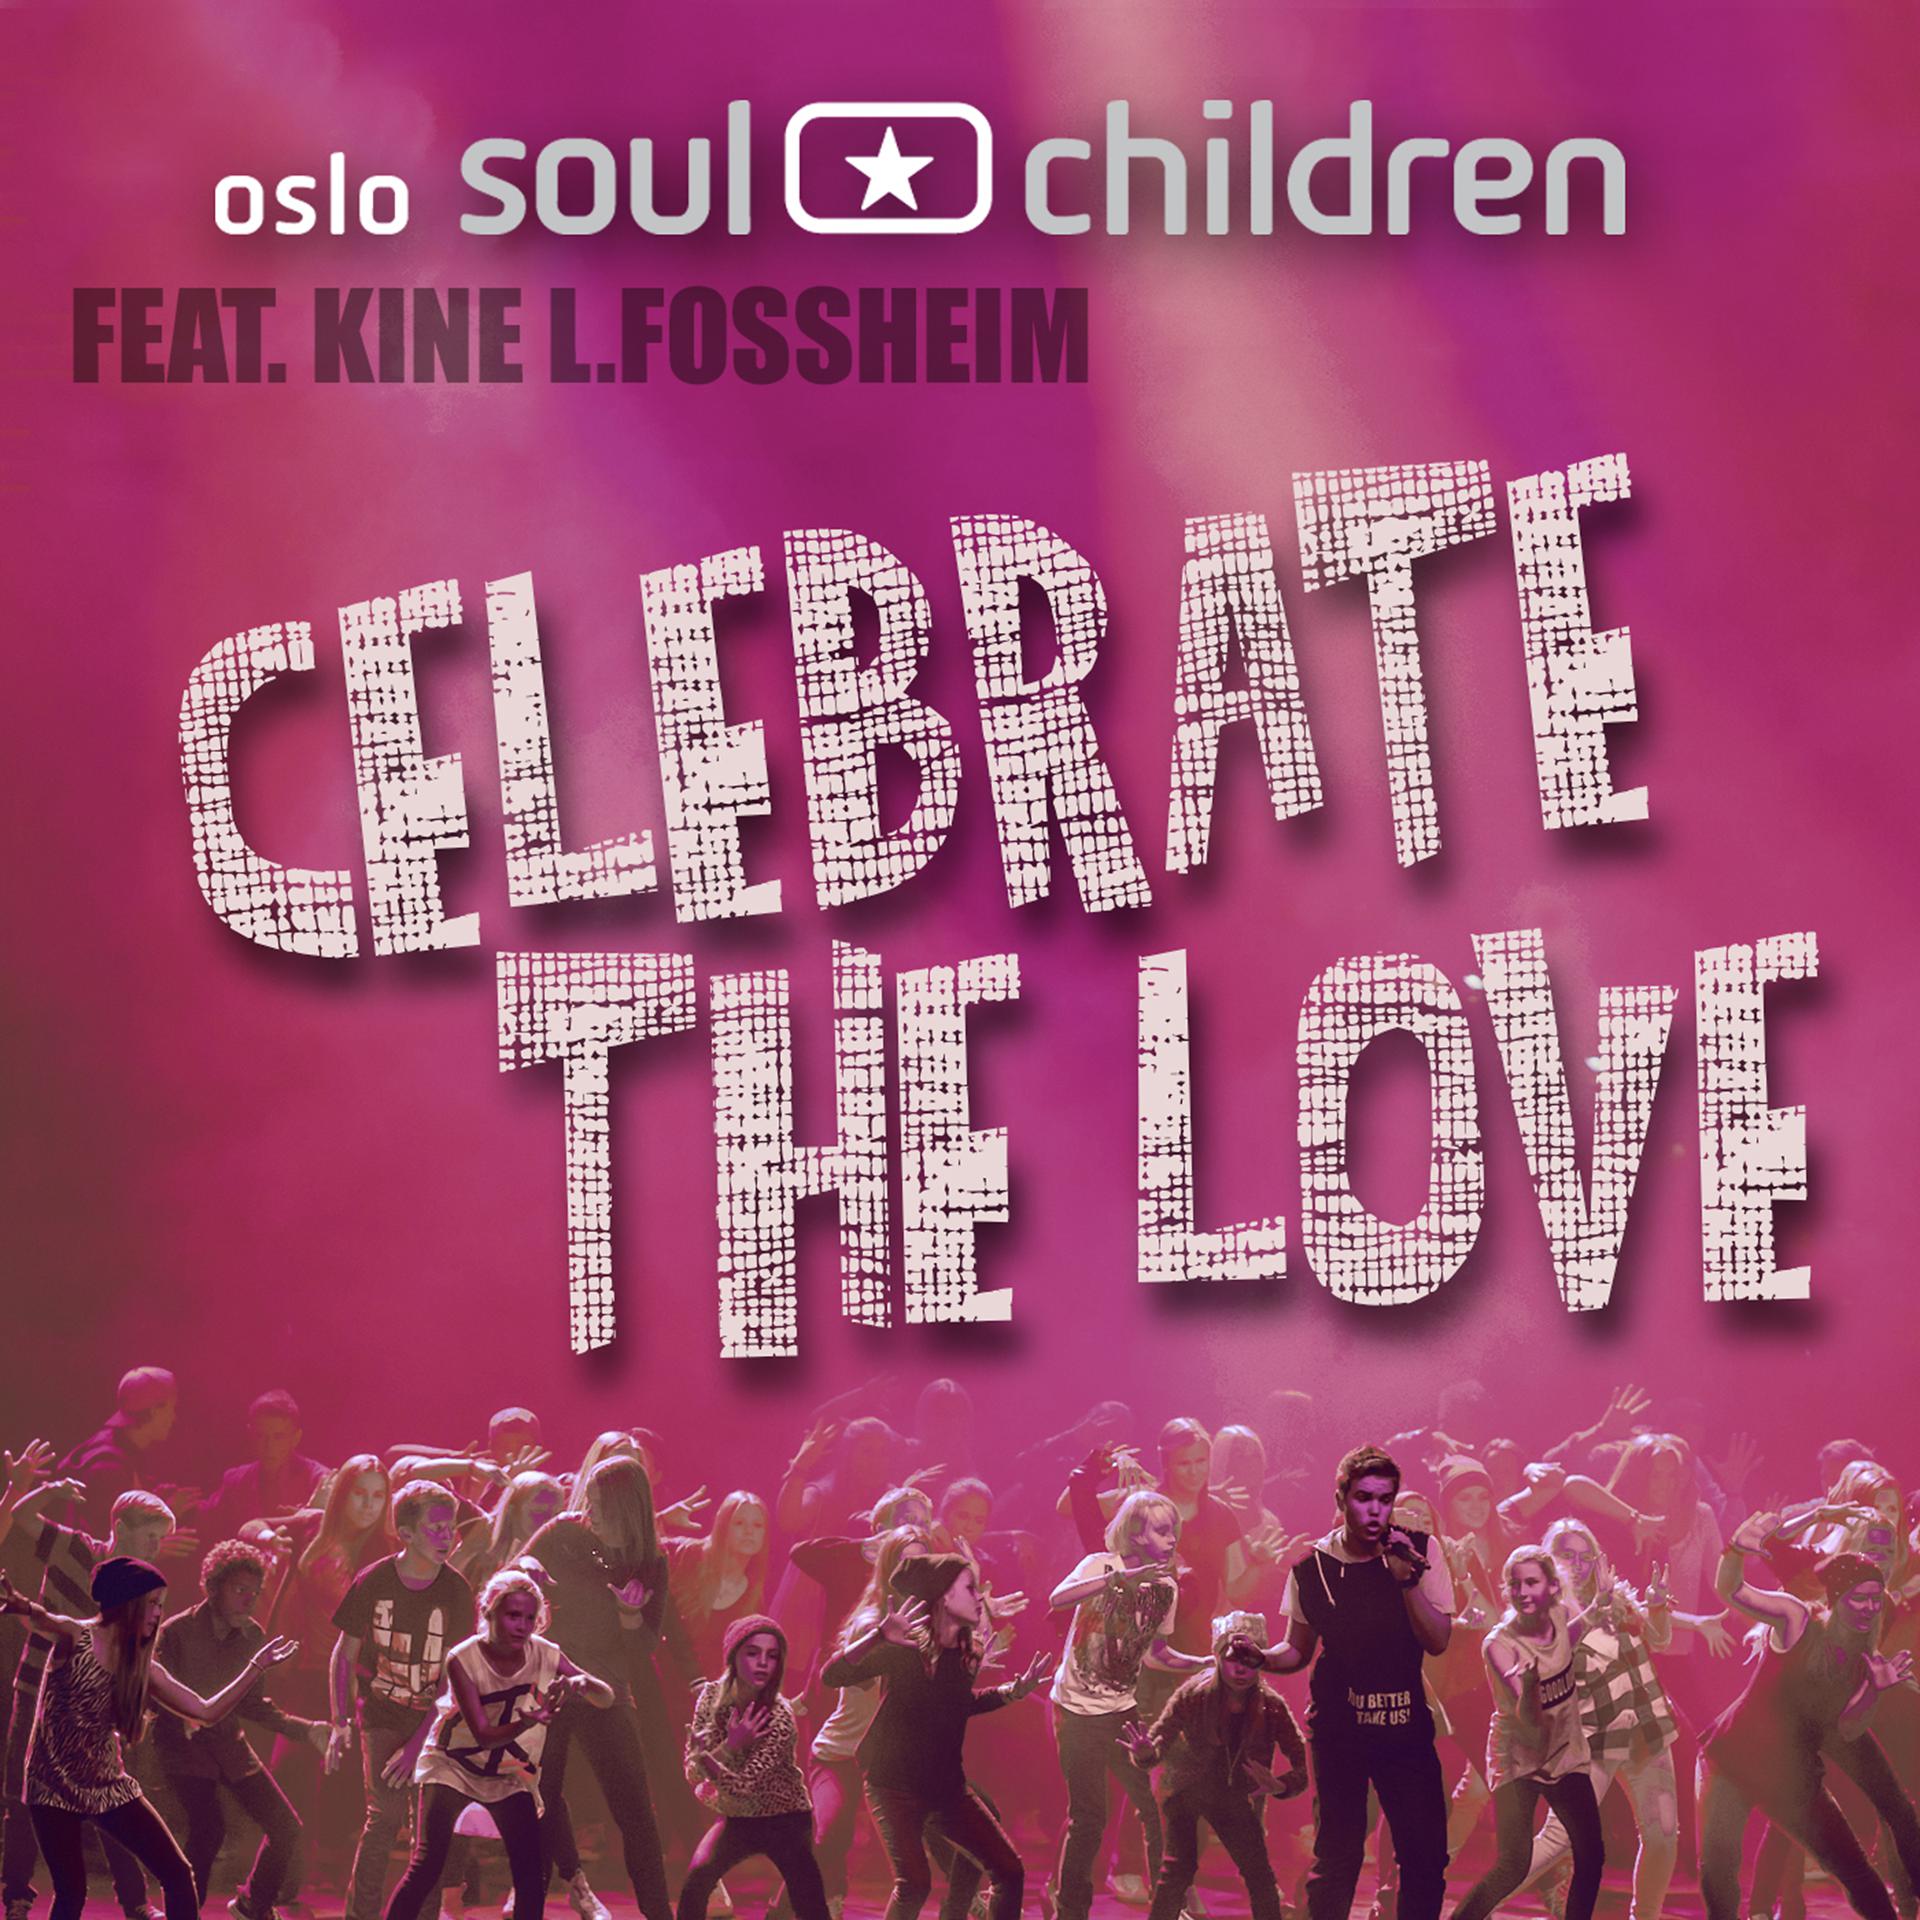 Постер альбома Celebrate the Love